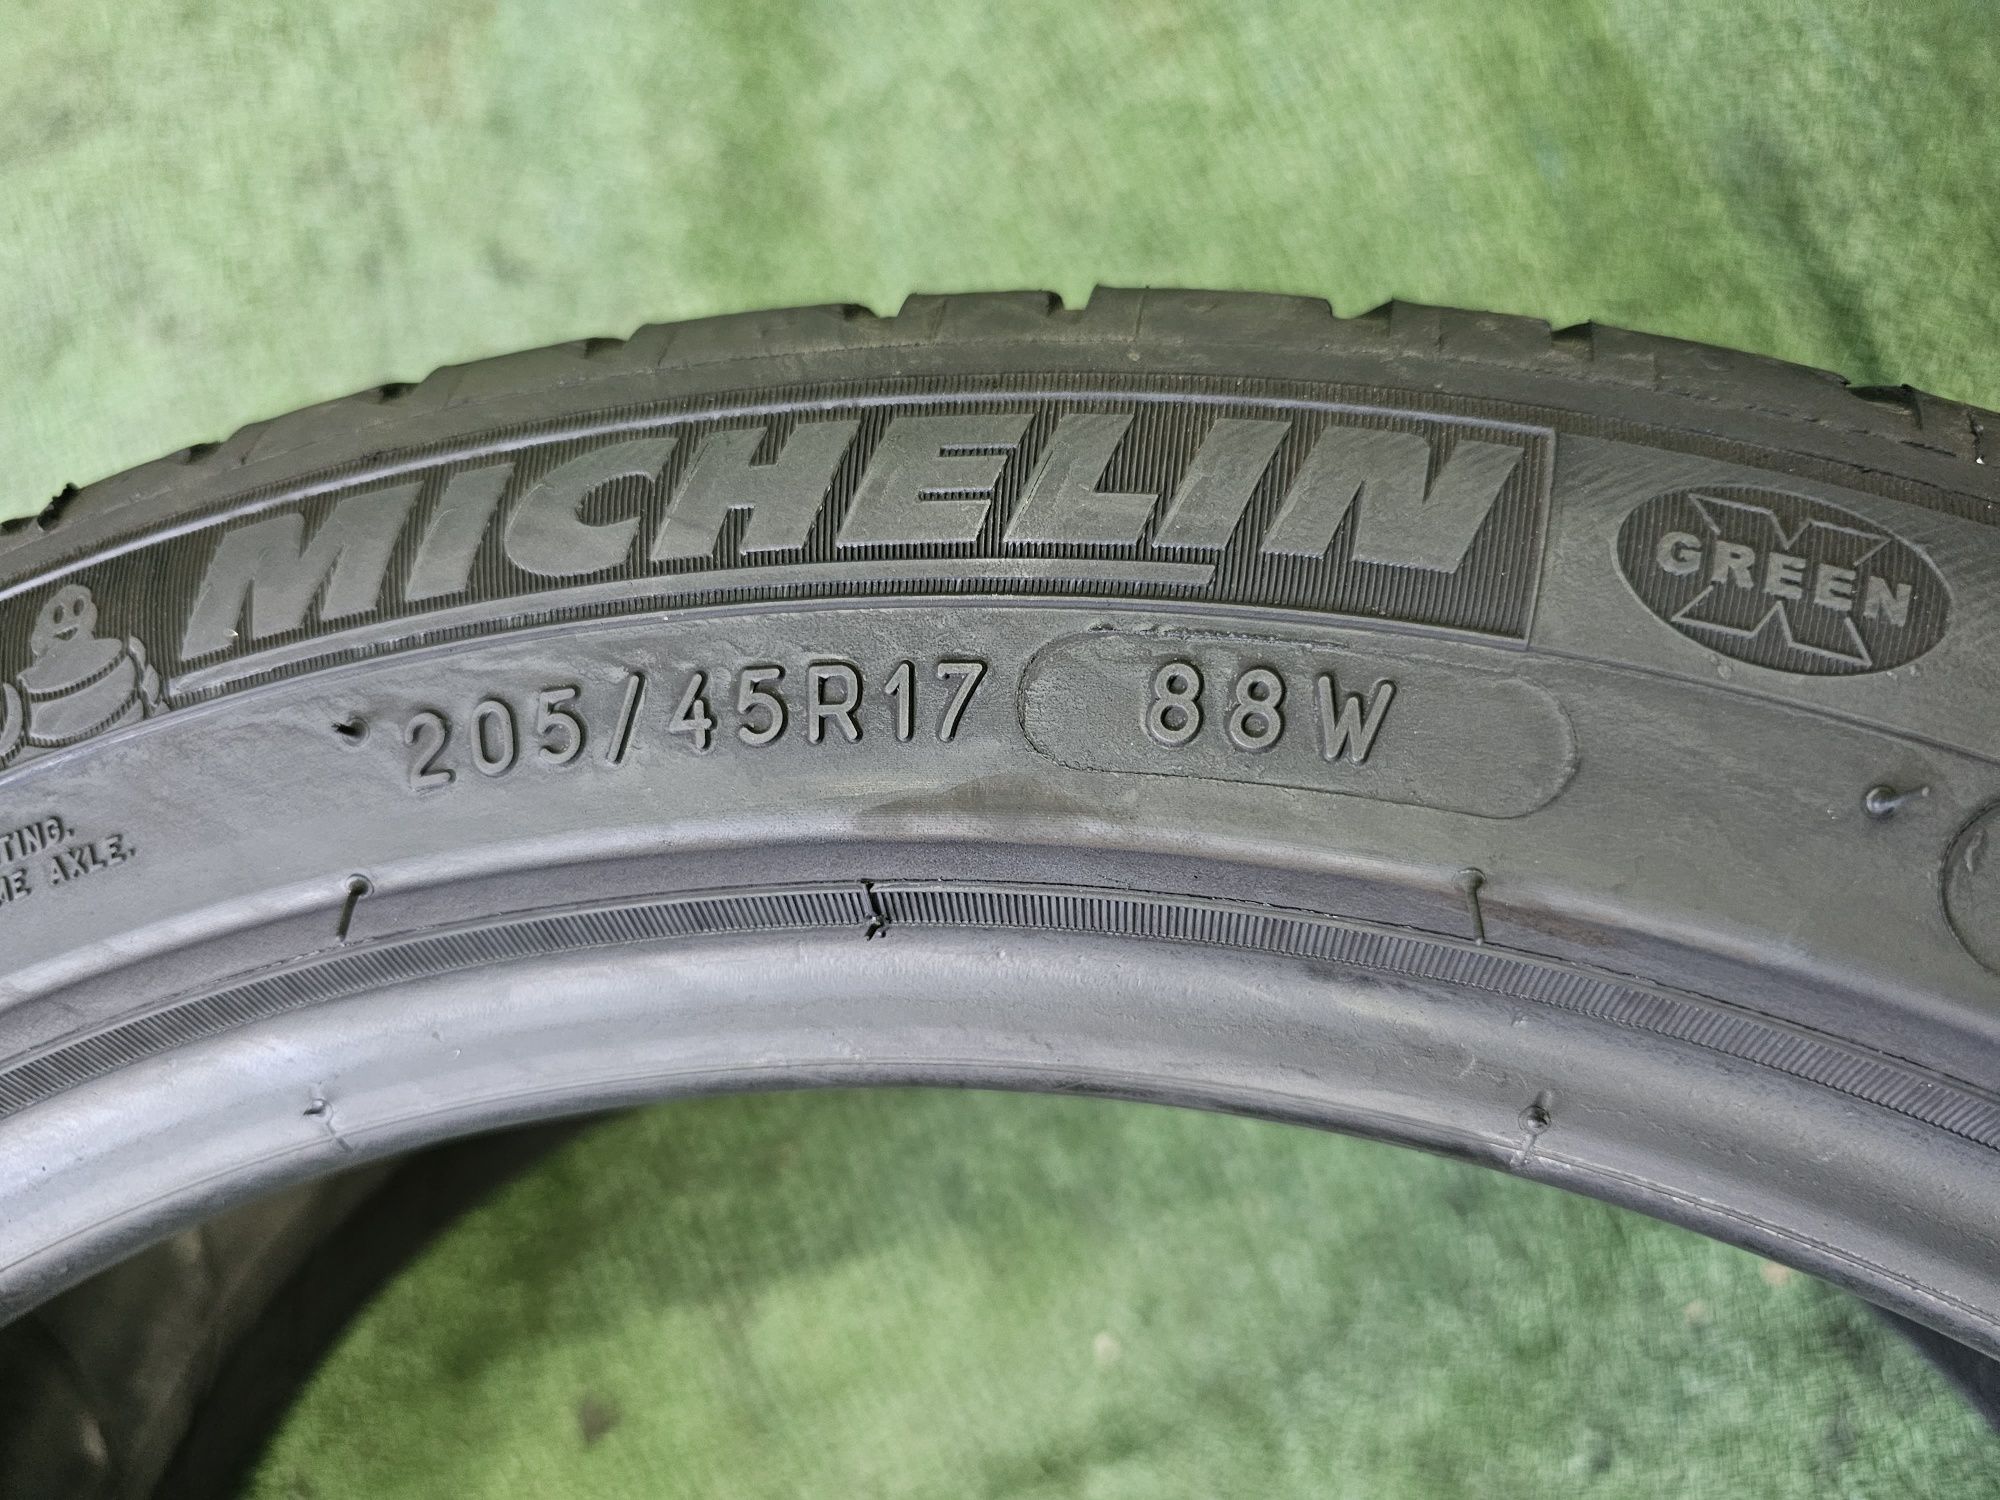 205 45 r17 Michelin